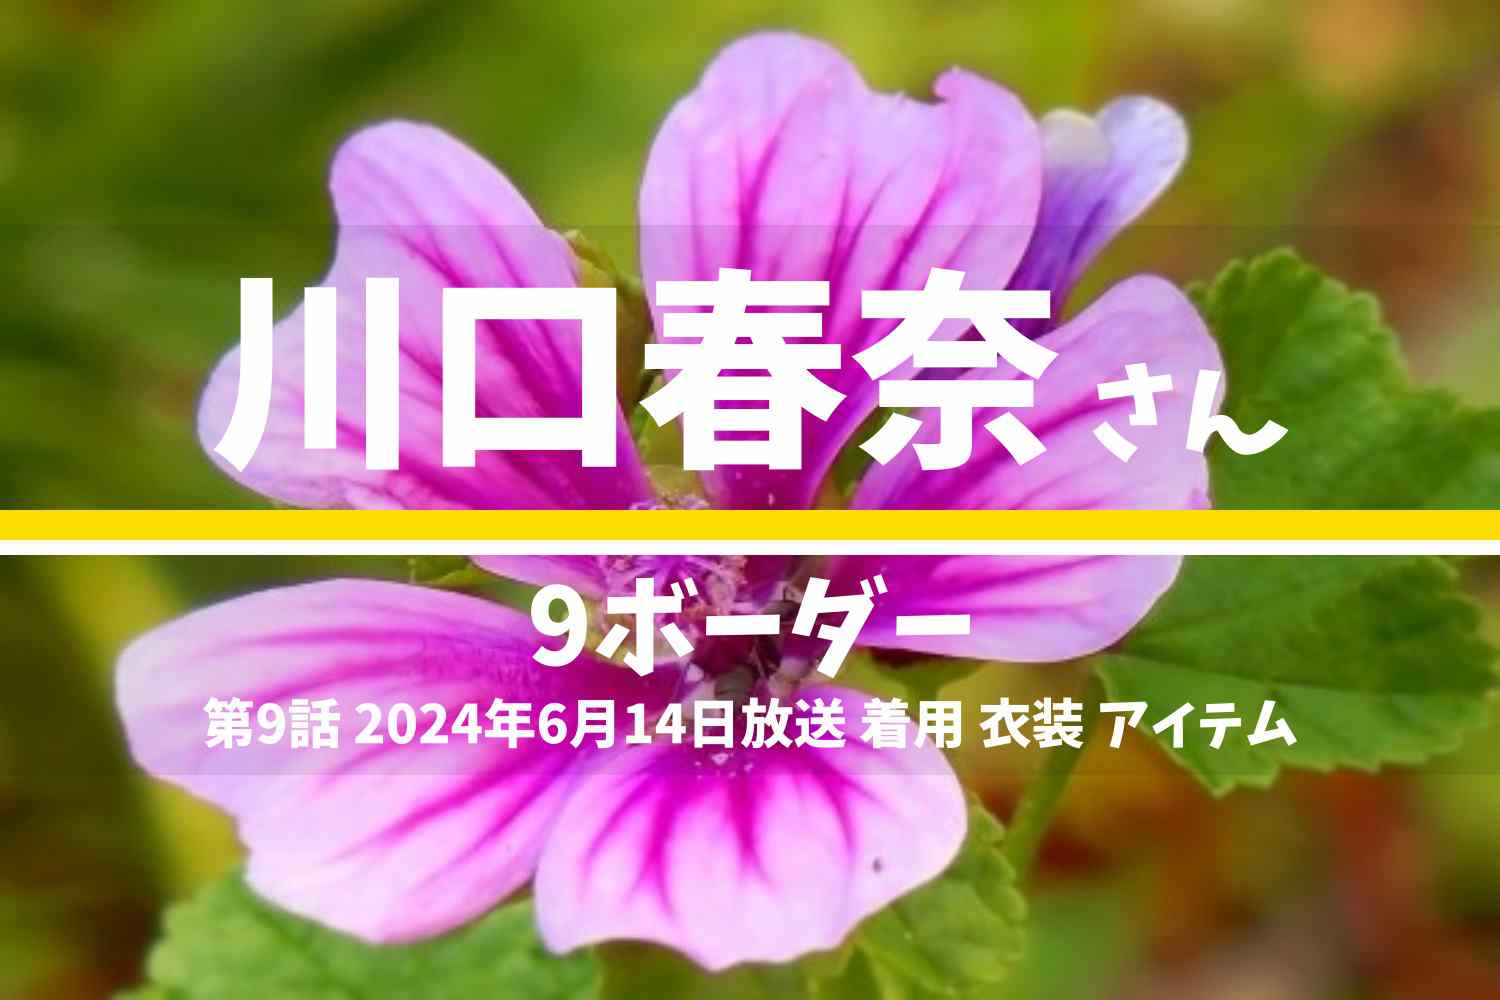 9ボーダー 川口春奈さん テレビドラマ 衣装 2024年6月14日放送